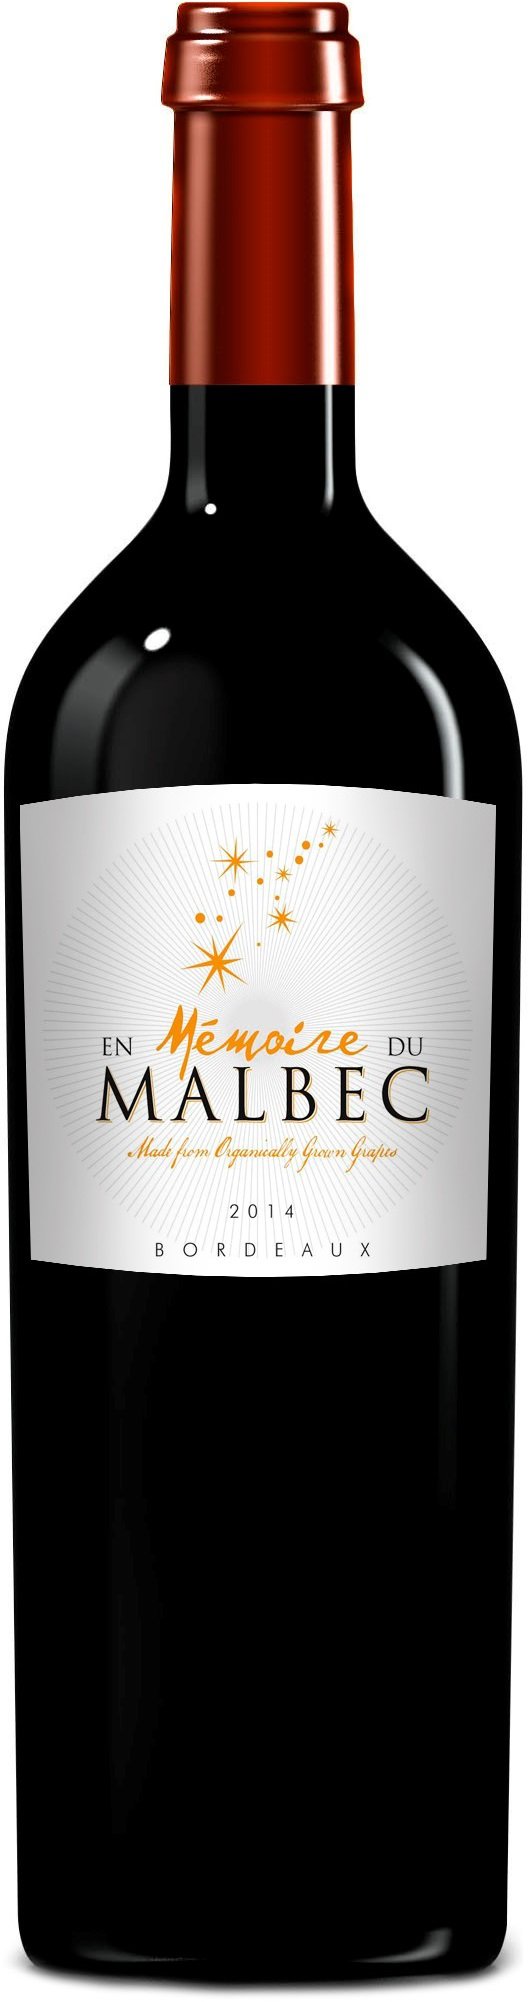 En Memoire du Malbec Bordeaux 2016